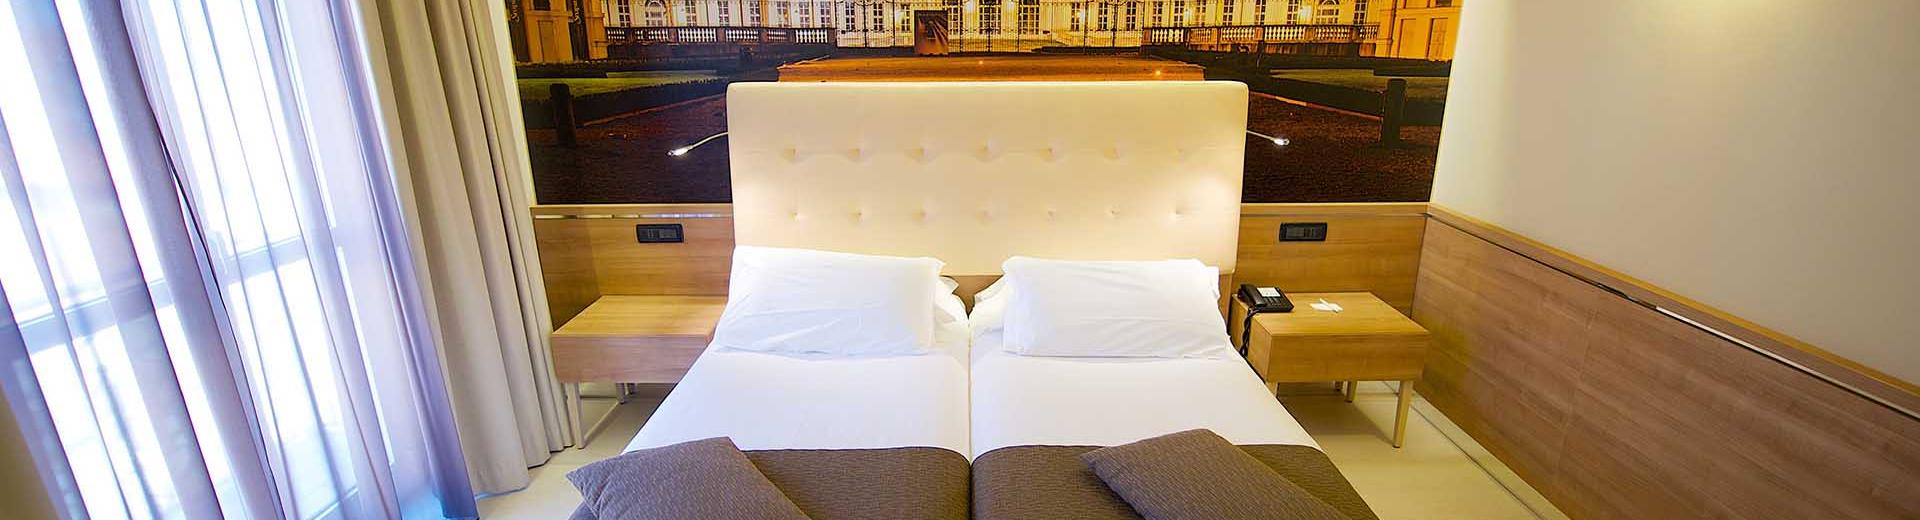 Les juniors suites du Best Western Hotel Luxor. Hôtel 4 étoiles à Turin